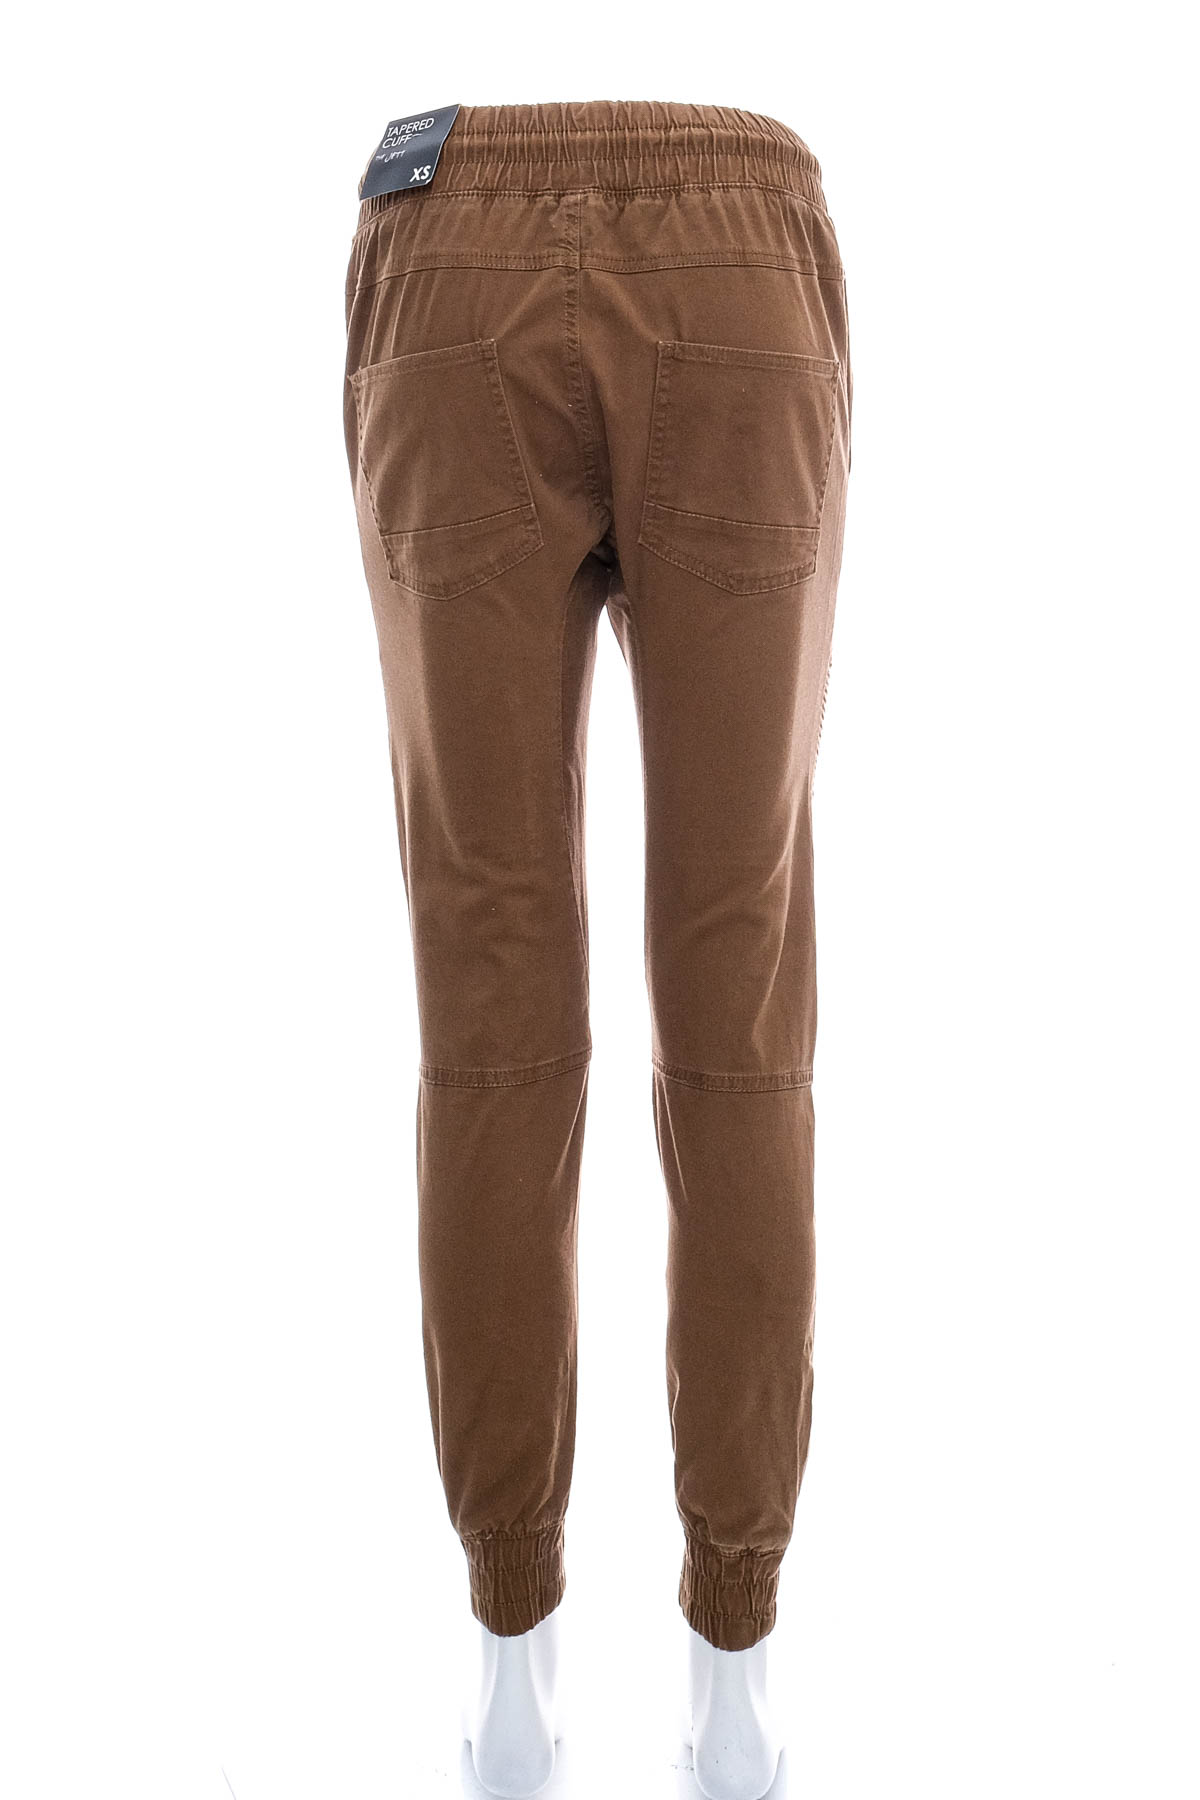 Men's trousers - Factorie - 1